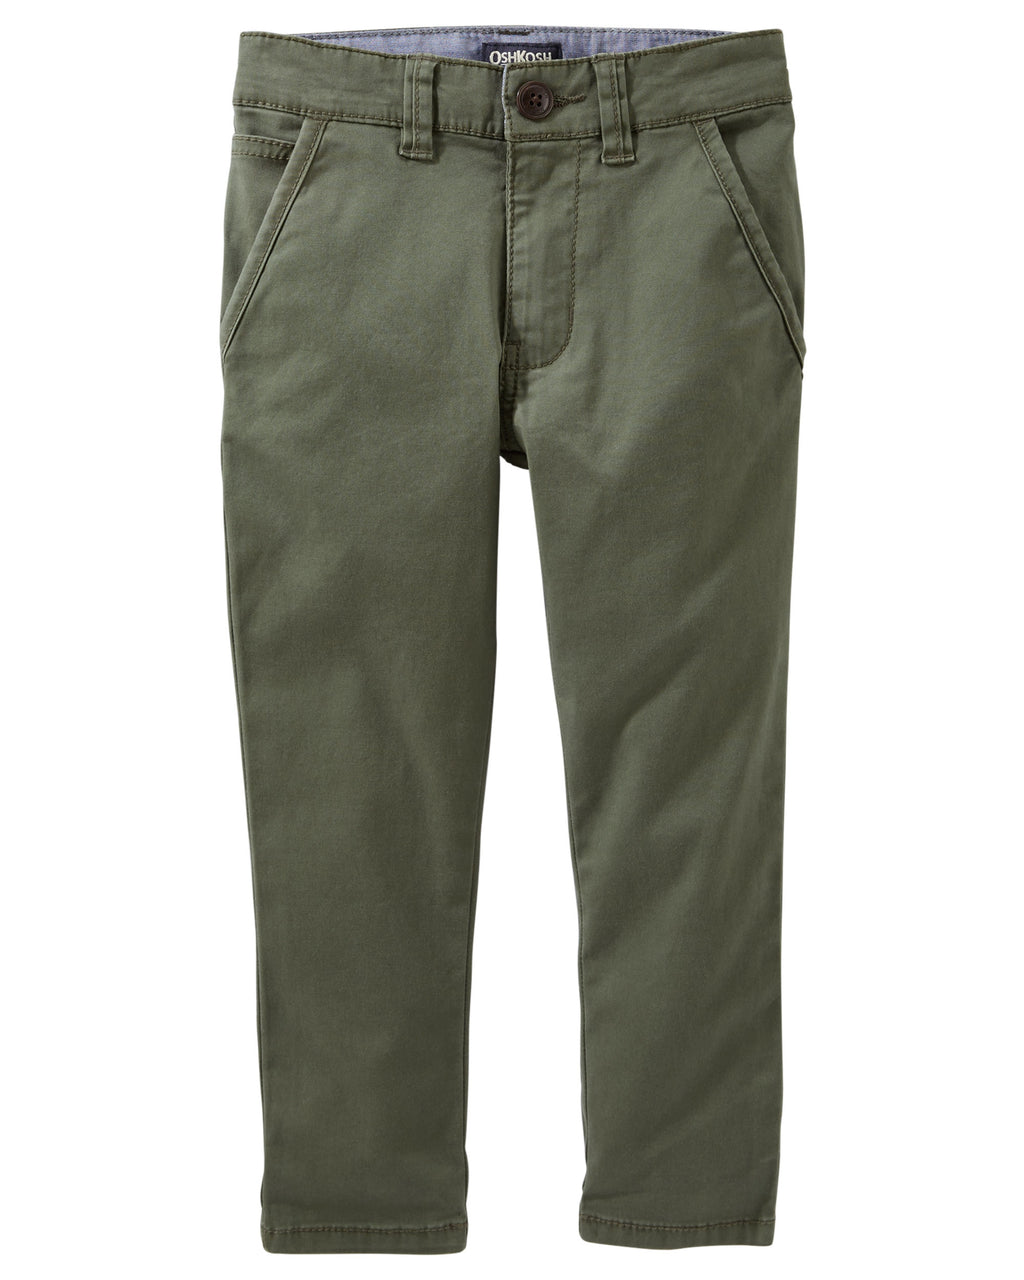 Pantalon OSHKOSH Slim-Stretch Flat Front Twills